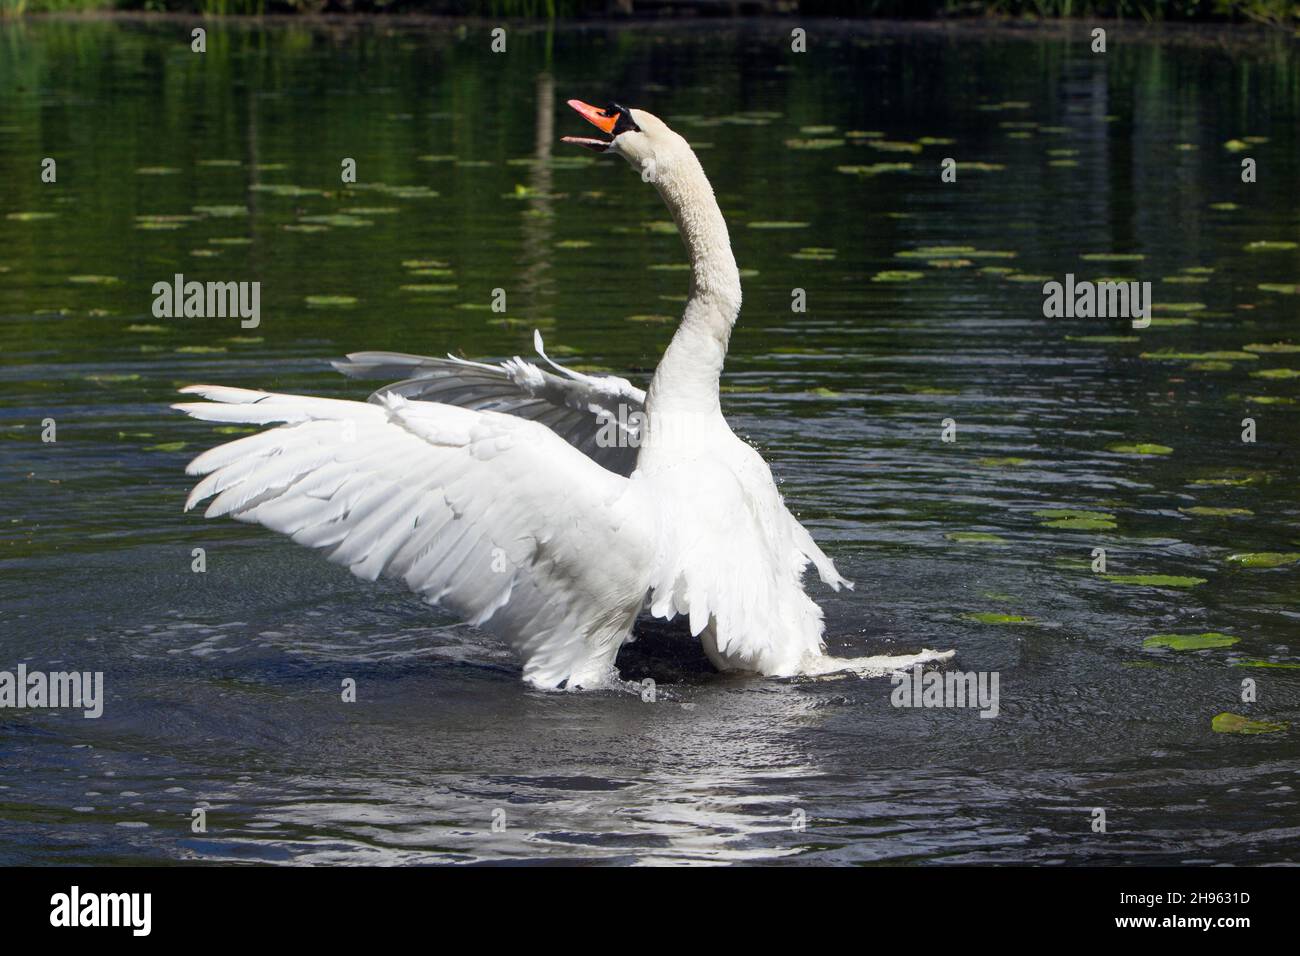 Mute Swan (Cygnus olor), en el lago, criando fuera del agua, revolotando sus alas y llamando, imponente, Baja Sajonia, Alemania Foto de stock